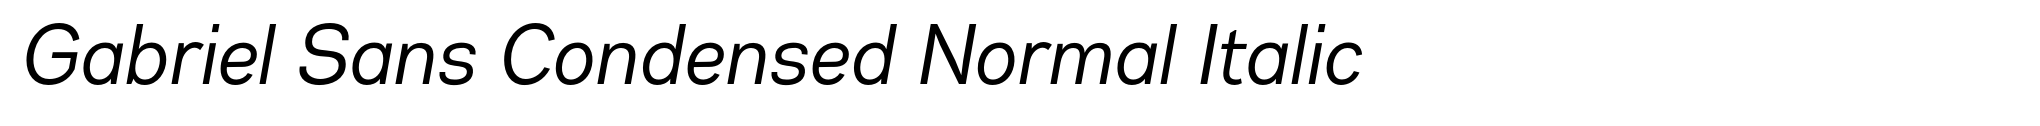 Gabriel Sans Condensed Normal Italic image